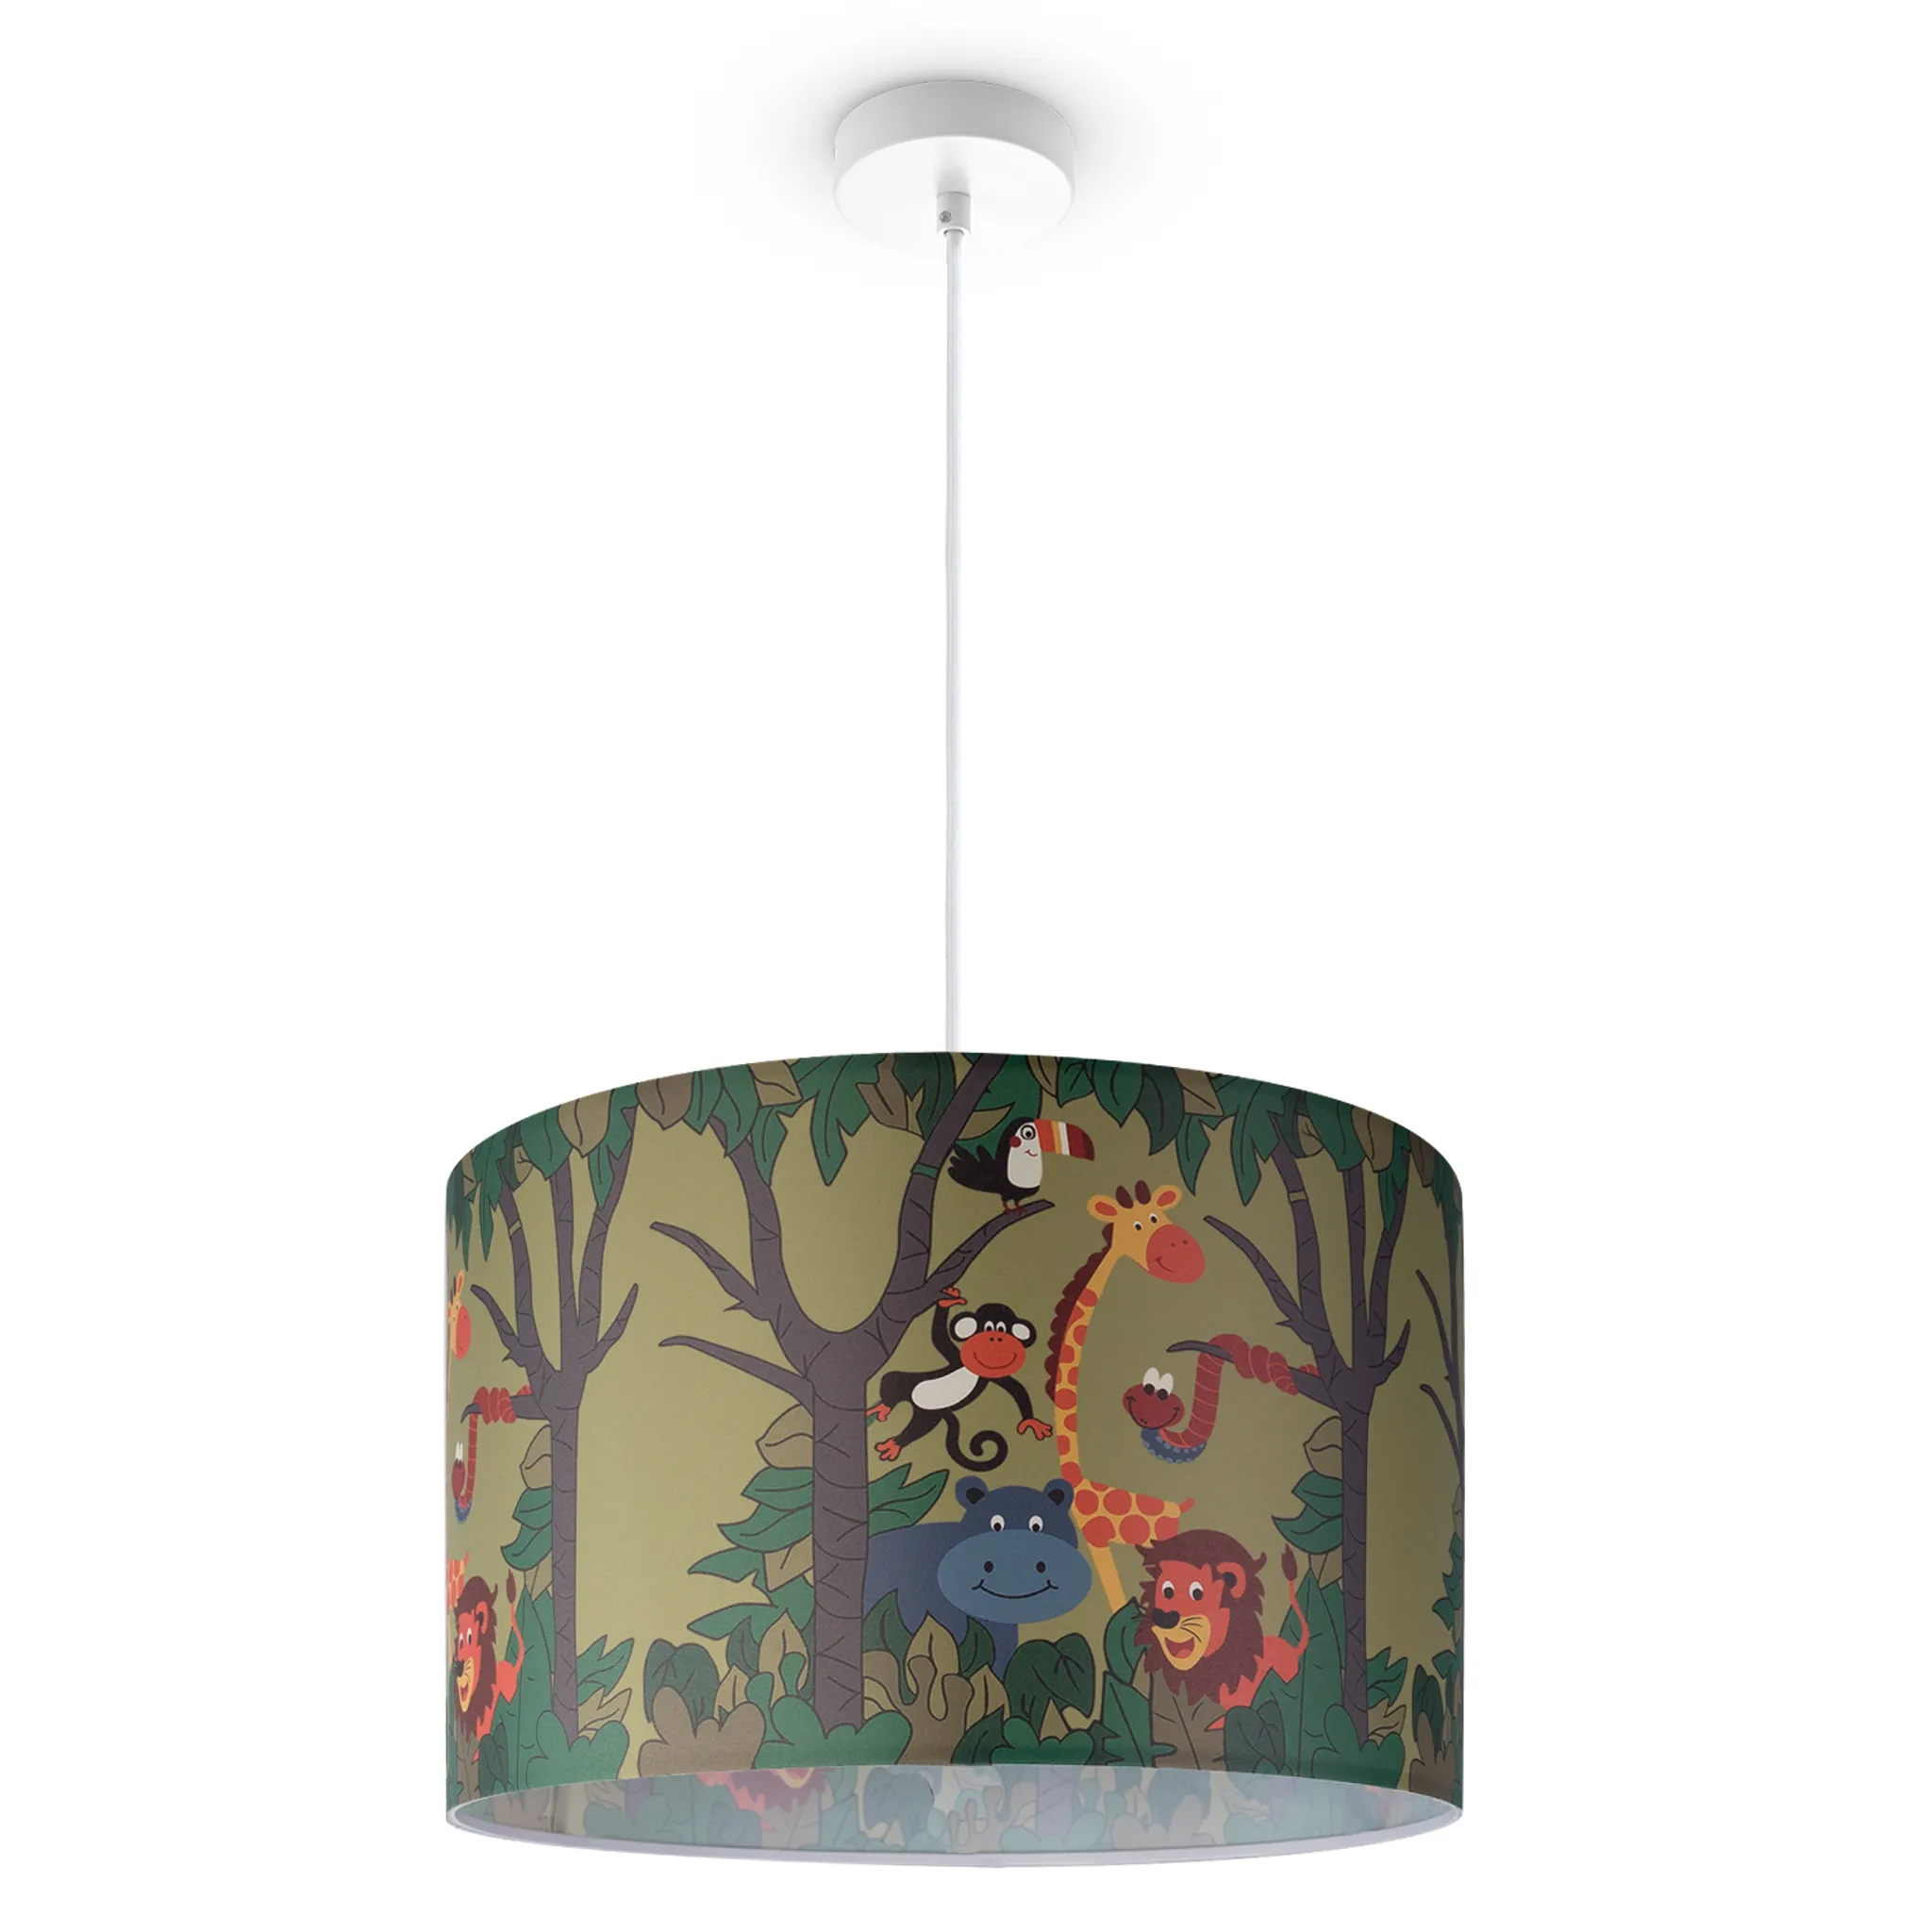 Kinderlampe Deckenlampe LED Pendelleuchte Kinderzimmer Dschungel Tier-Motiv  E27 Leuchten Farbe / Größe Grün